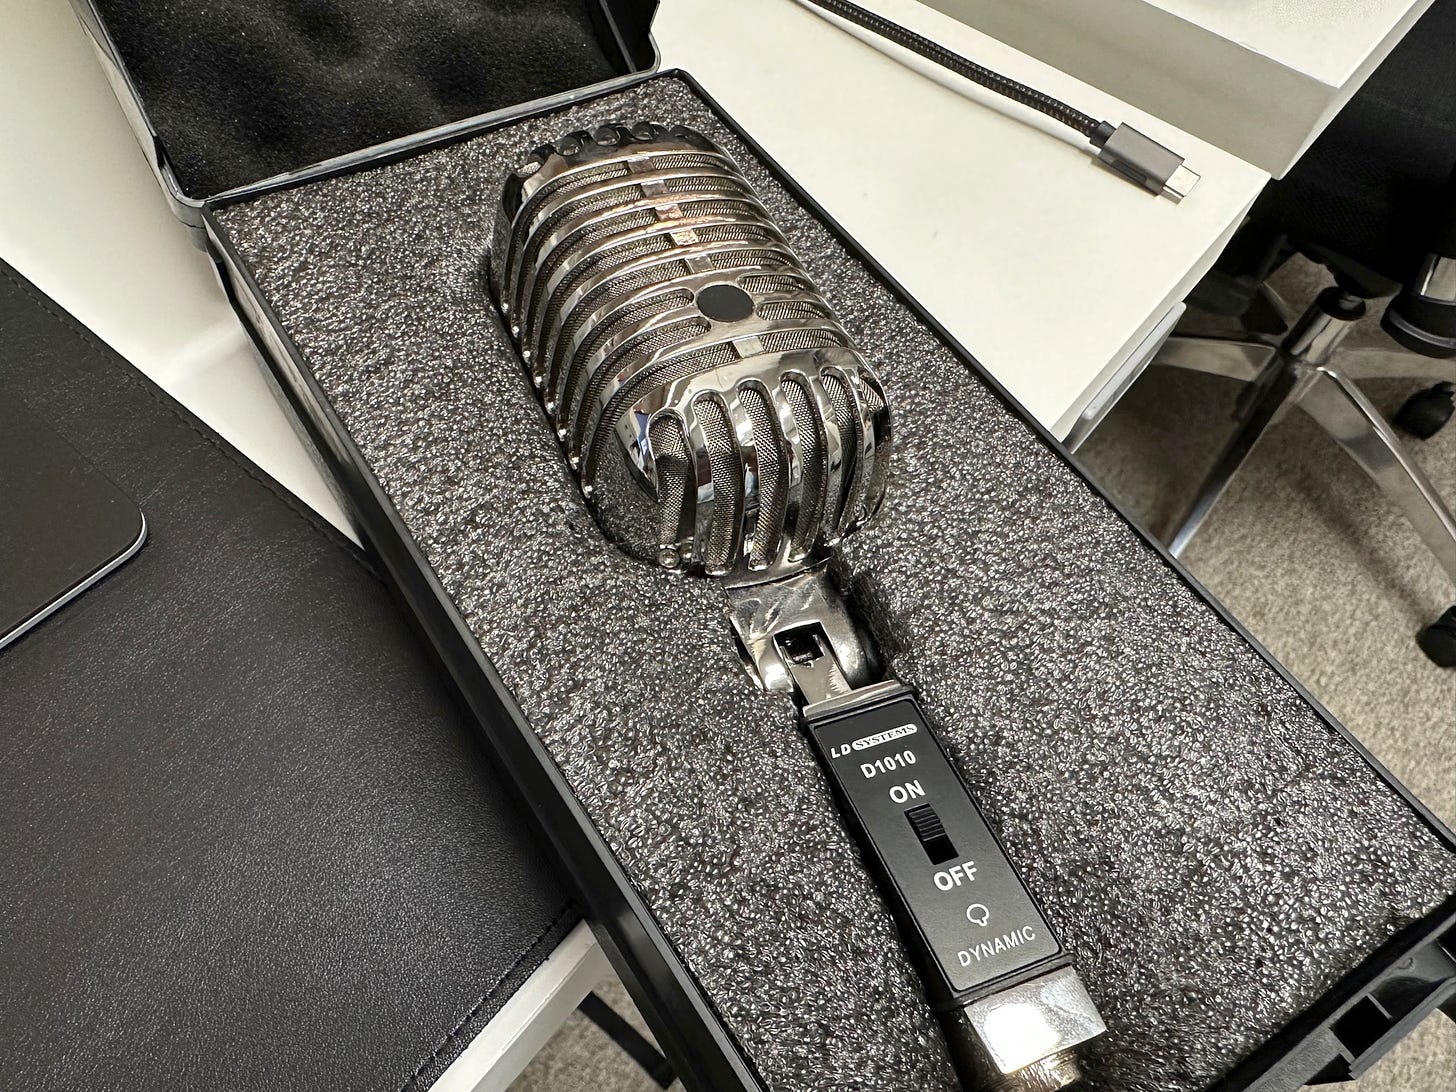 El micrófono que sorteo, que parece un micro de cantante de los años 50